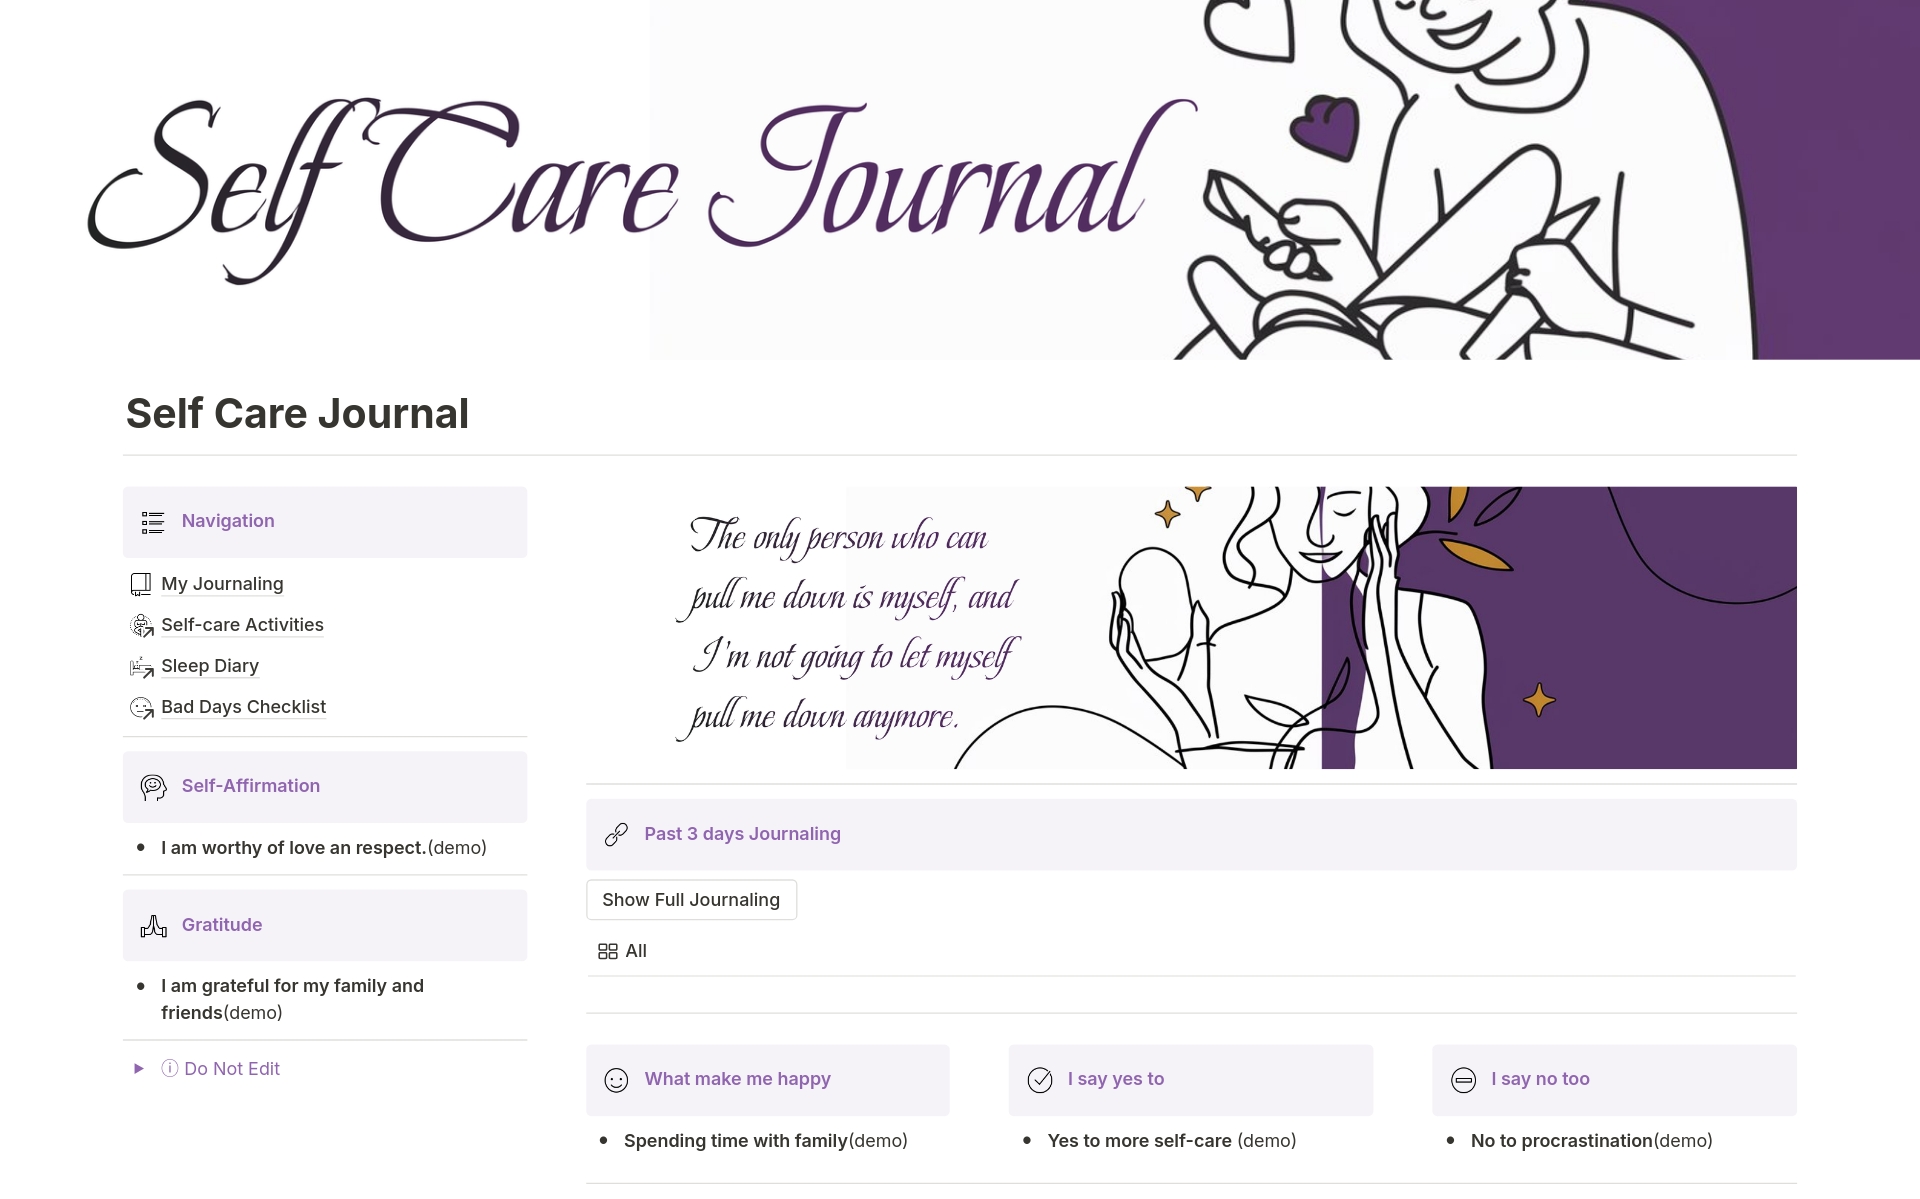 Aperçu du modèle de Self Care Journal